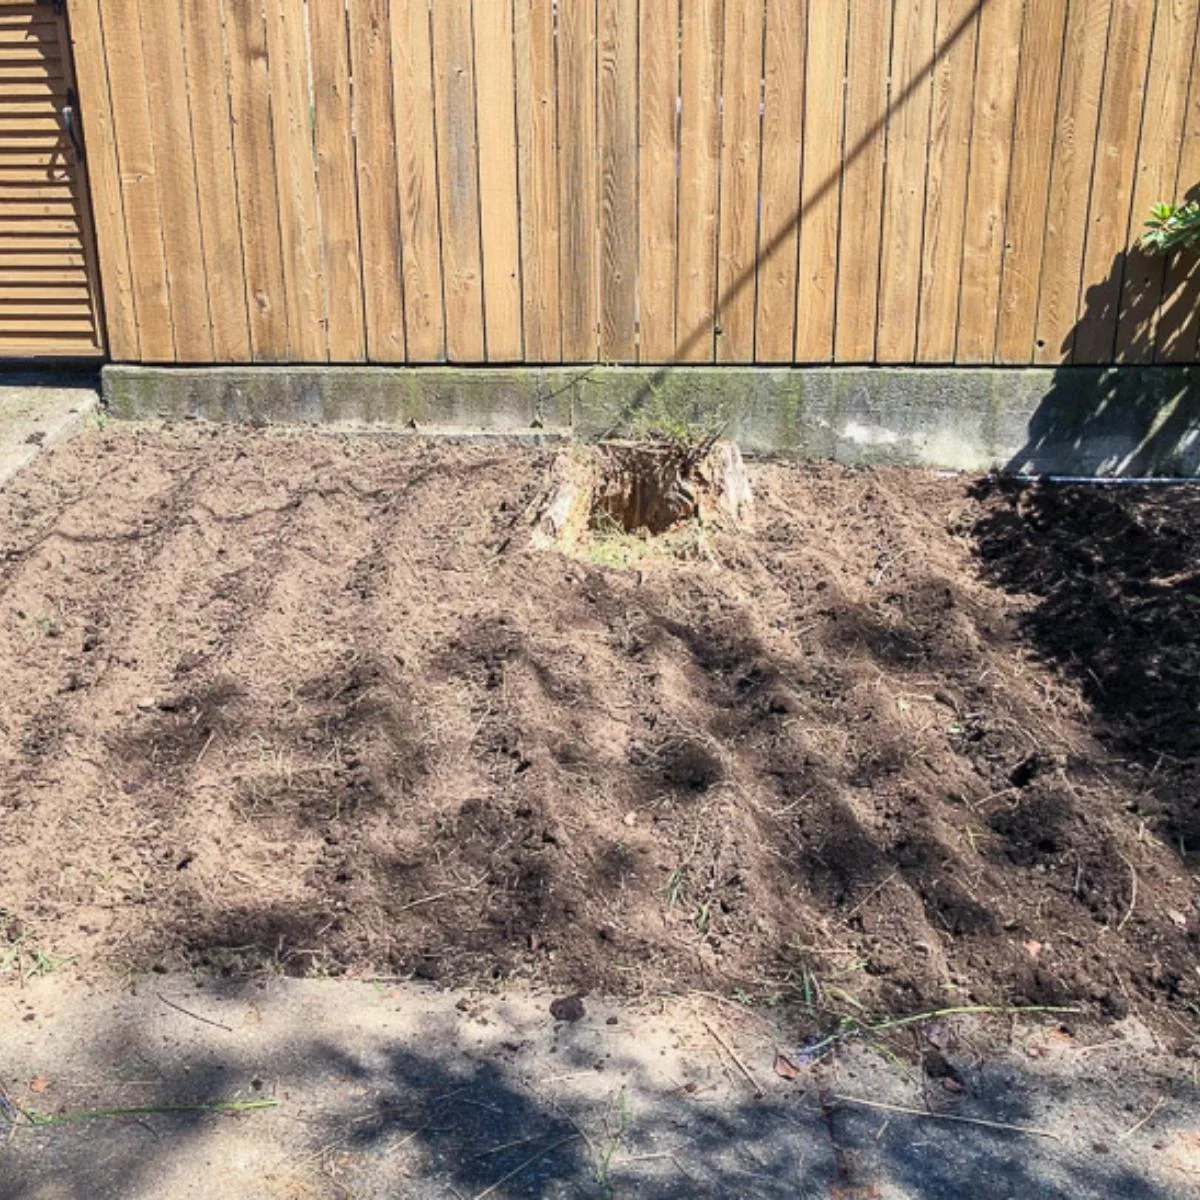 tilled garden bed after removing weeds